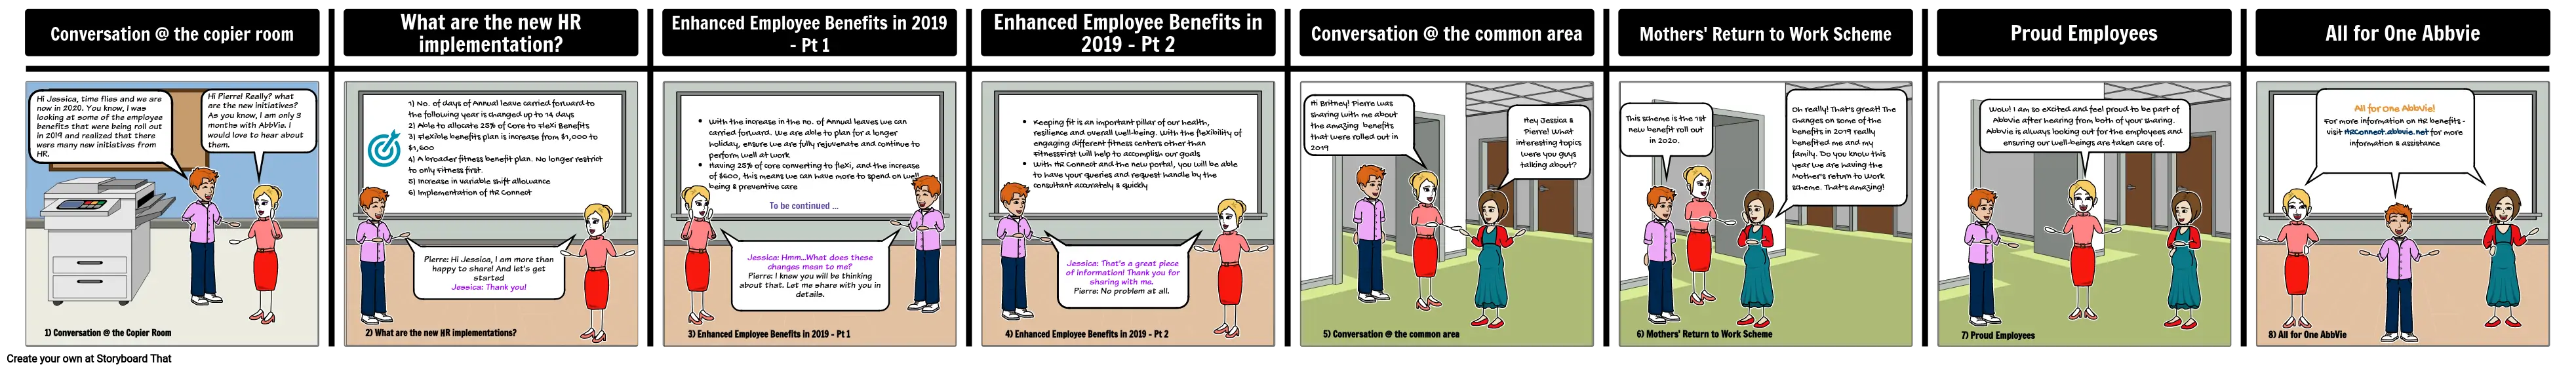 Newsletter - HR Benefits